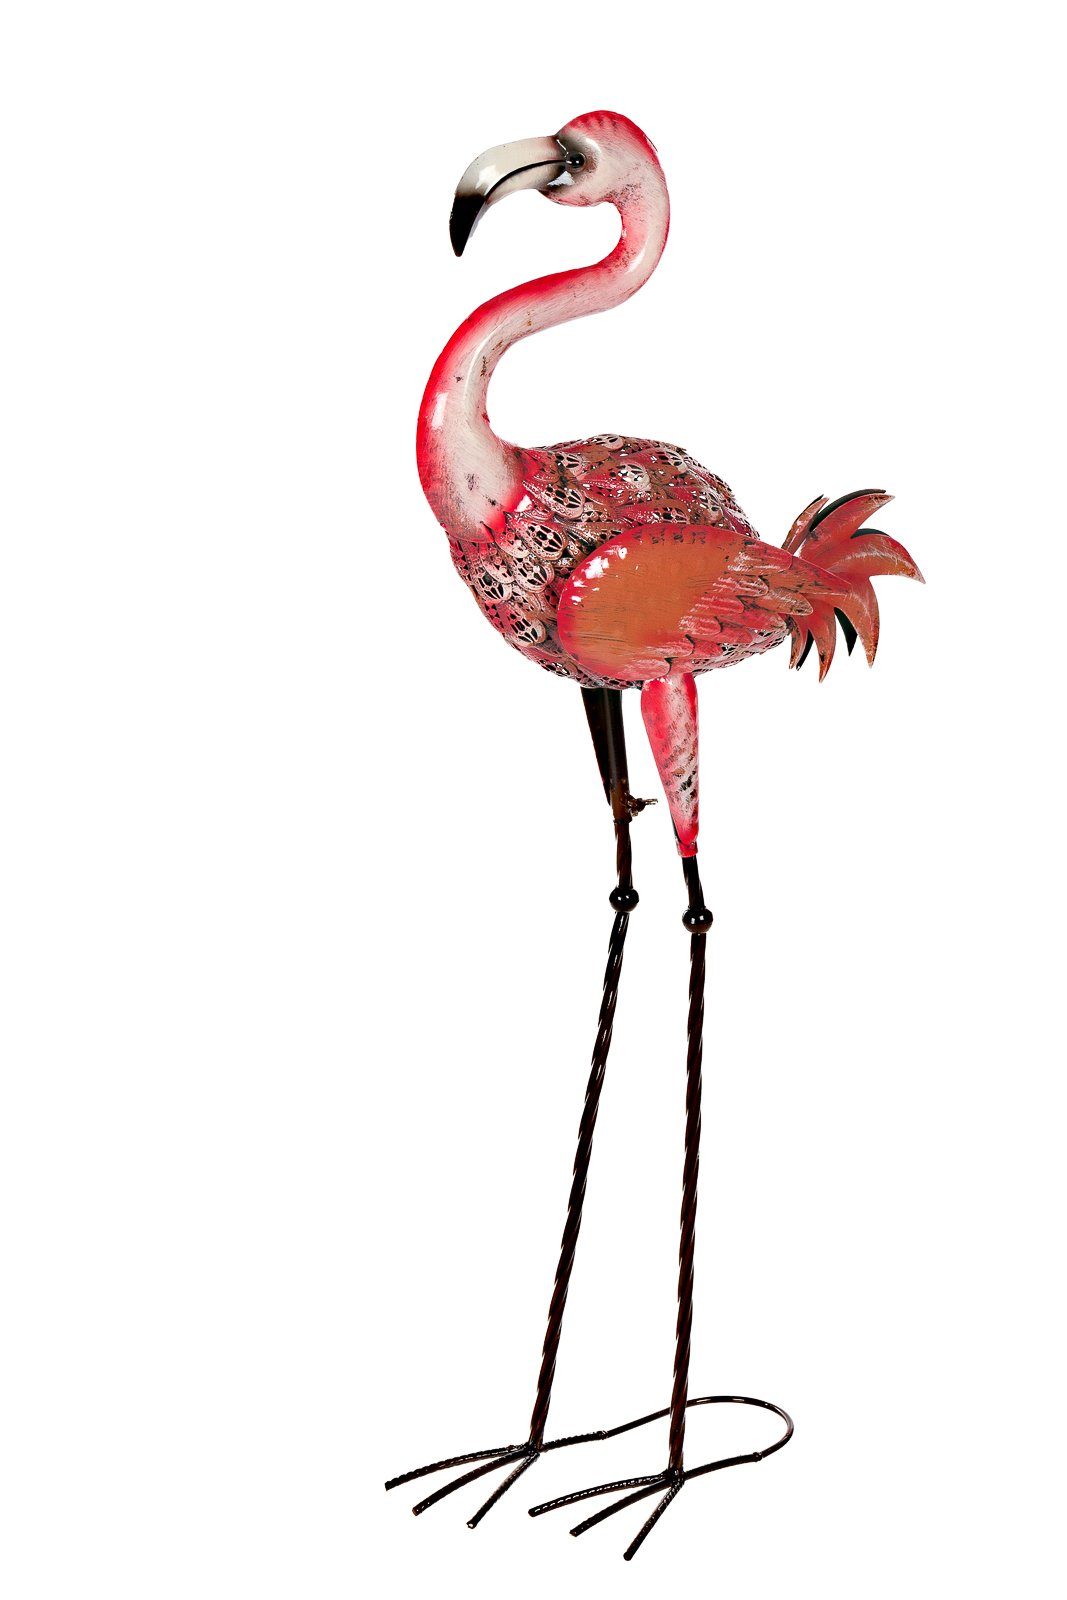 BIRENDY Dekofigur Riesige schöne Metall Metallart Gartenfigur Flamingo rosa Dekofigur Figuren 88cm